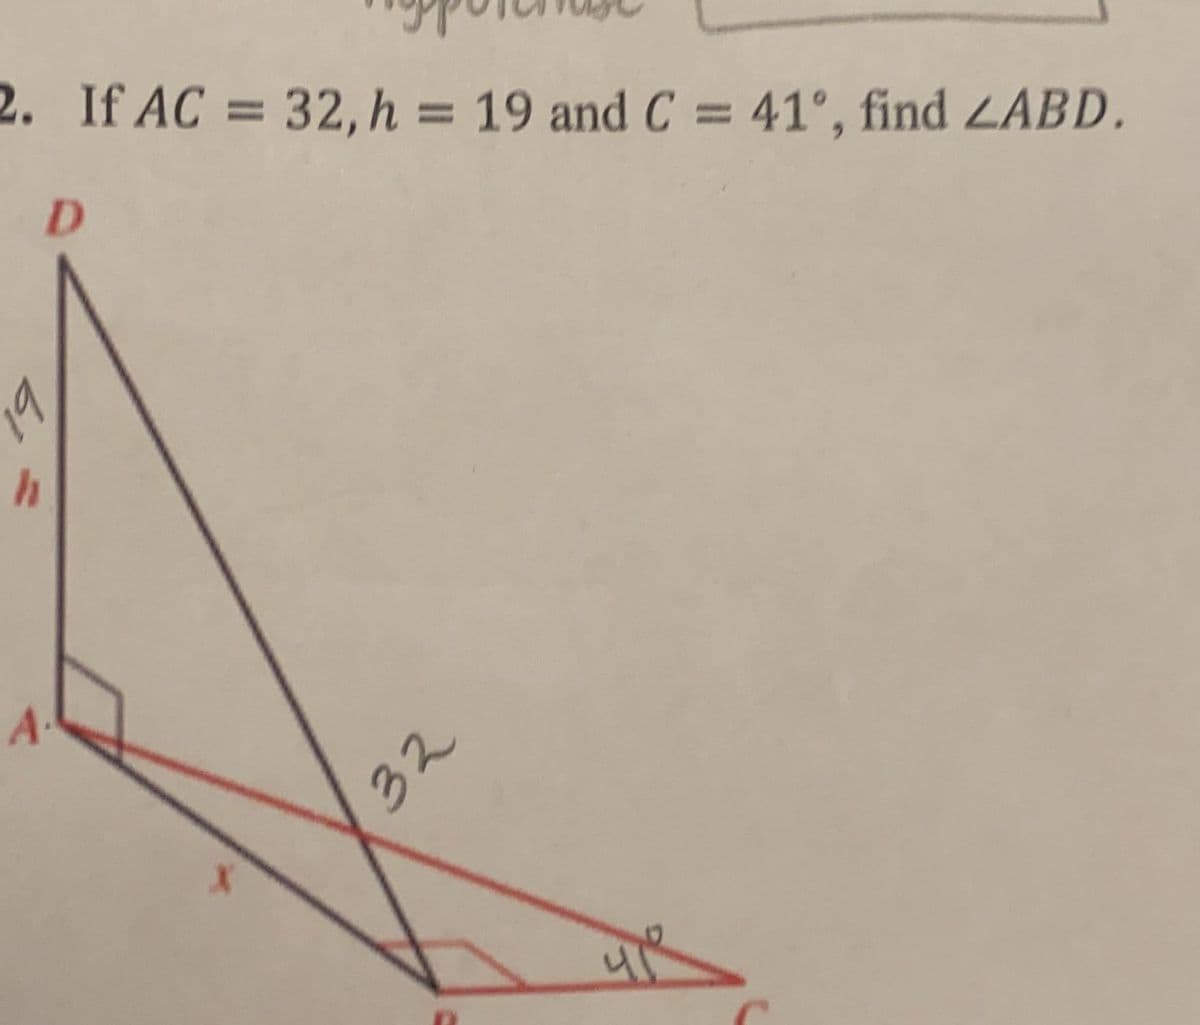 2. If AC = 32, h = 19 and C = 41°, find 2ABD.
%3D
%3D
%3D
D.
19
32
